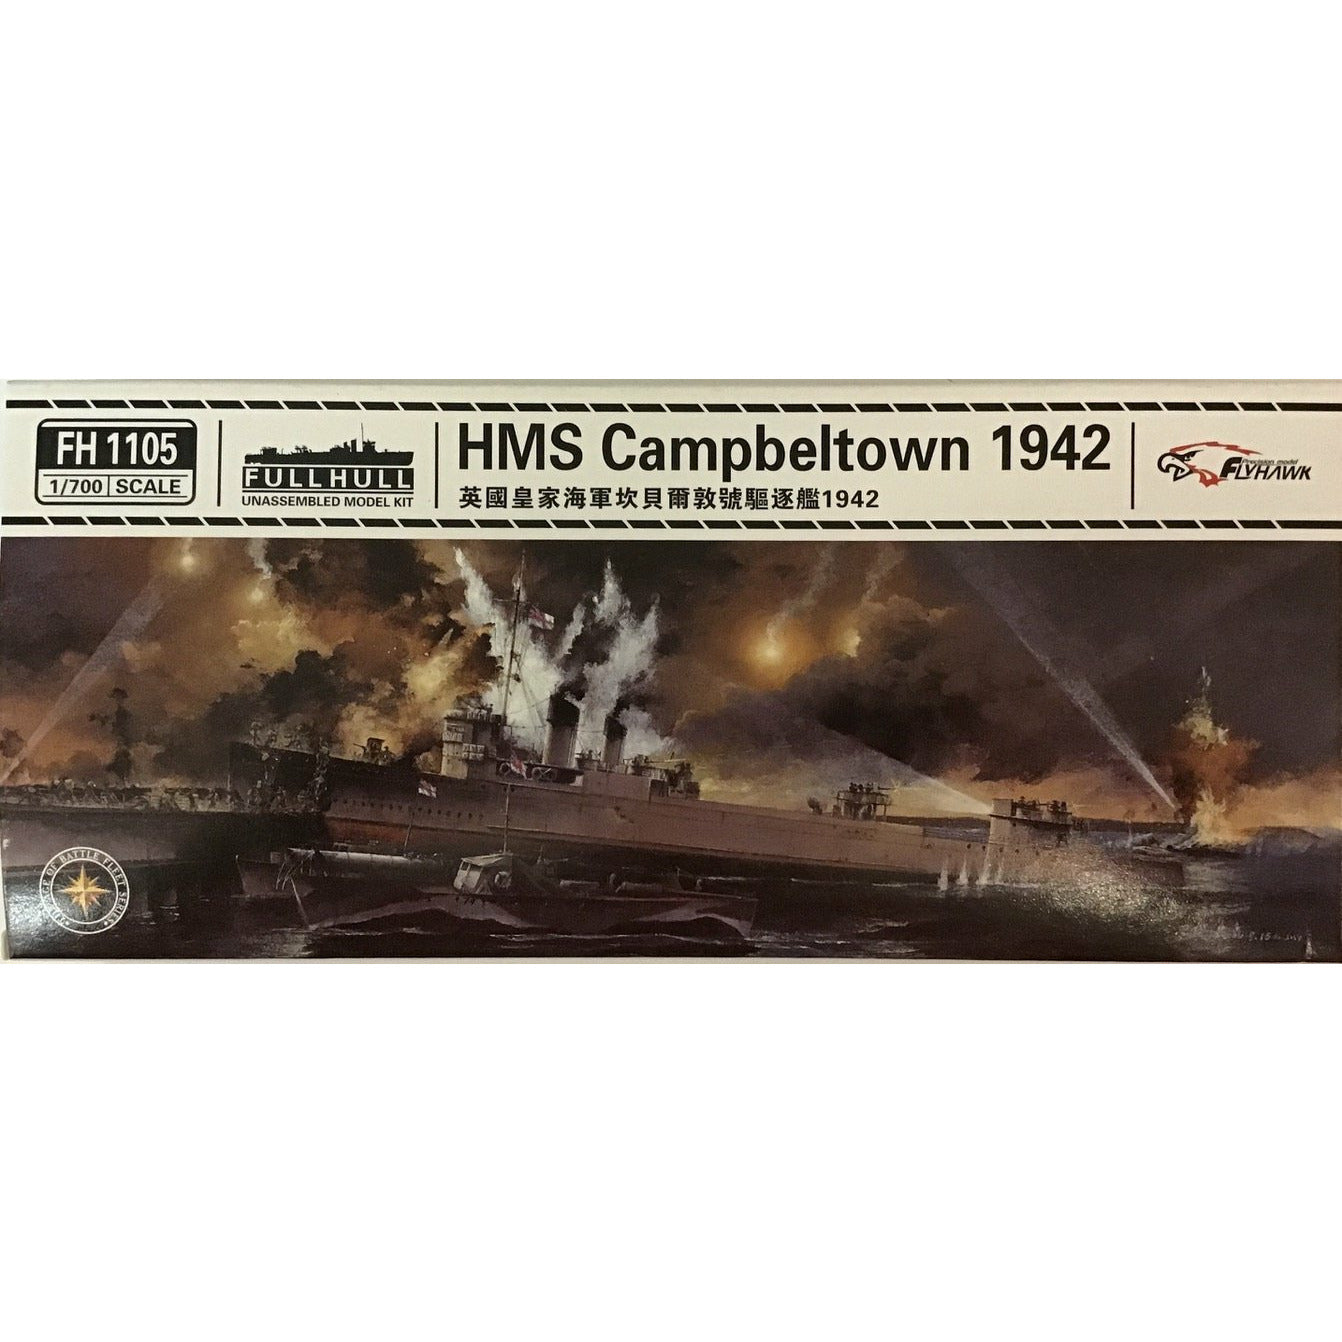 HMS Campbeltown 1942 1/700 Model Ship Kit #FH1105 by Flyhawk